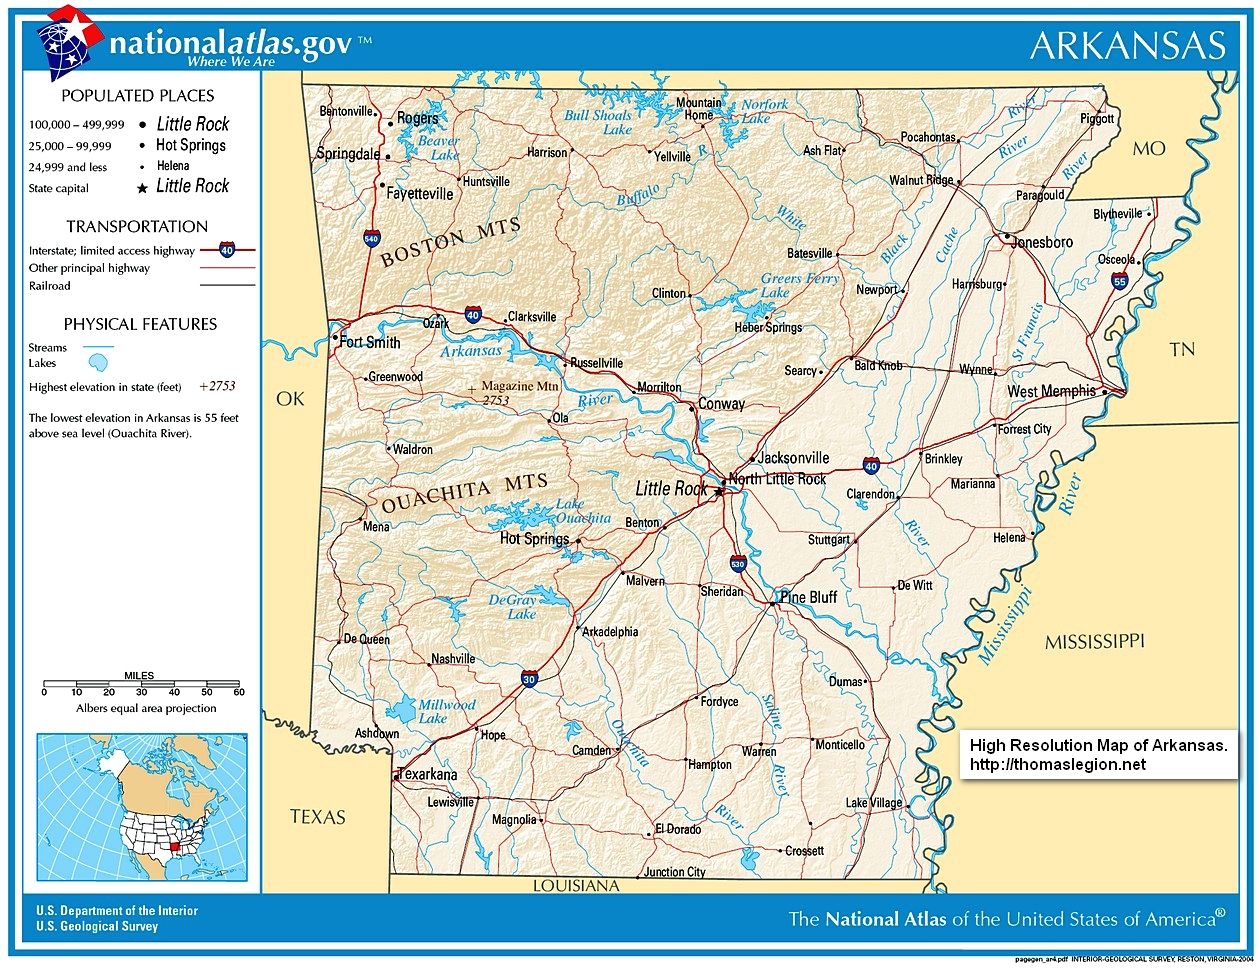 High Resolution Map of Arkansas.jpg